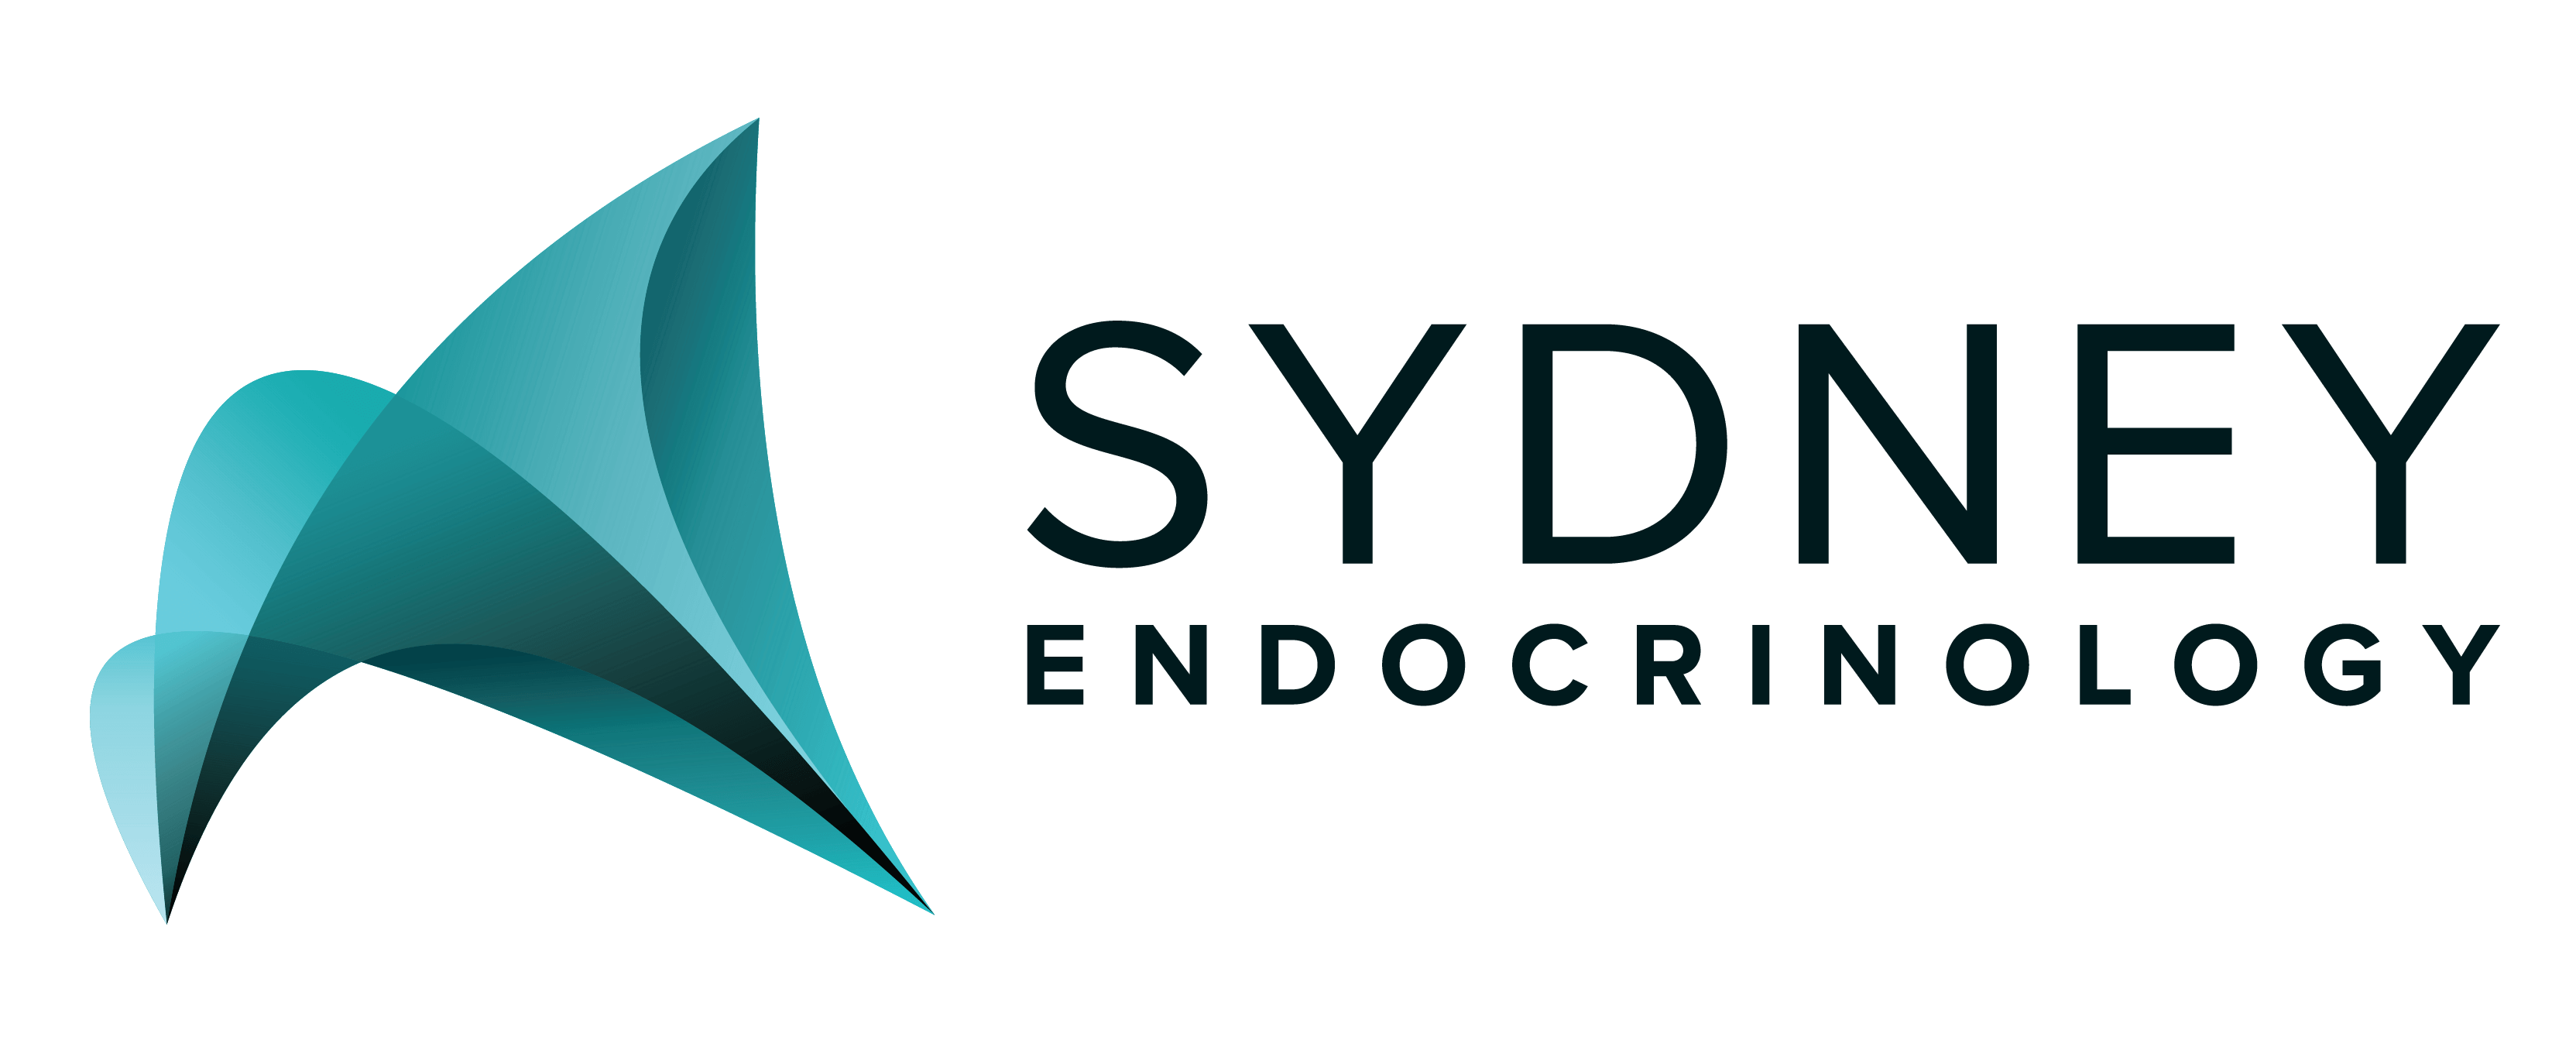 Endocrinology Logo - Sydney Endocrinology. Multidiscplinary Management of Diabetes